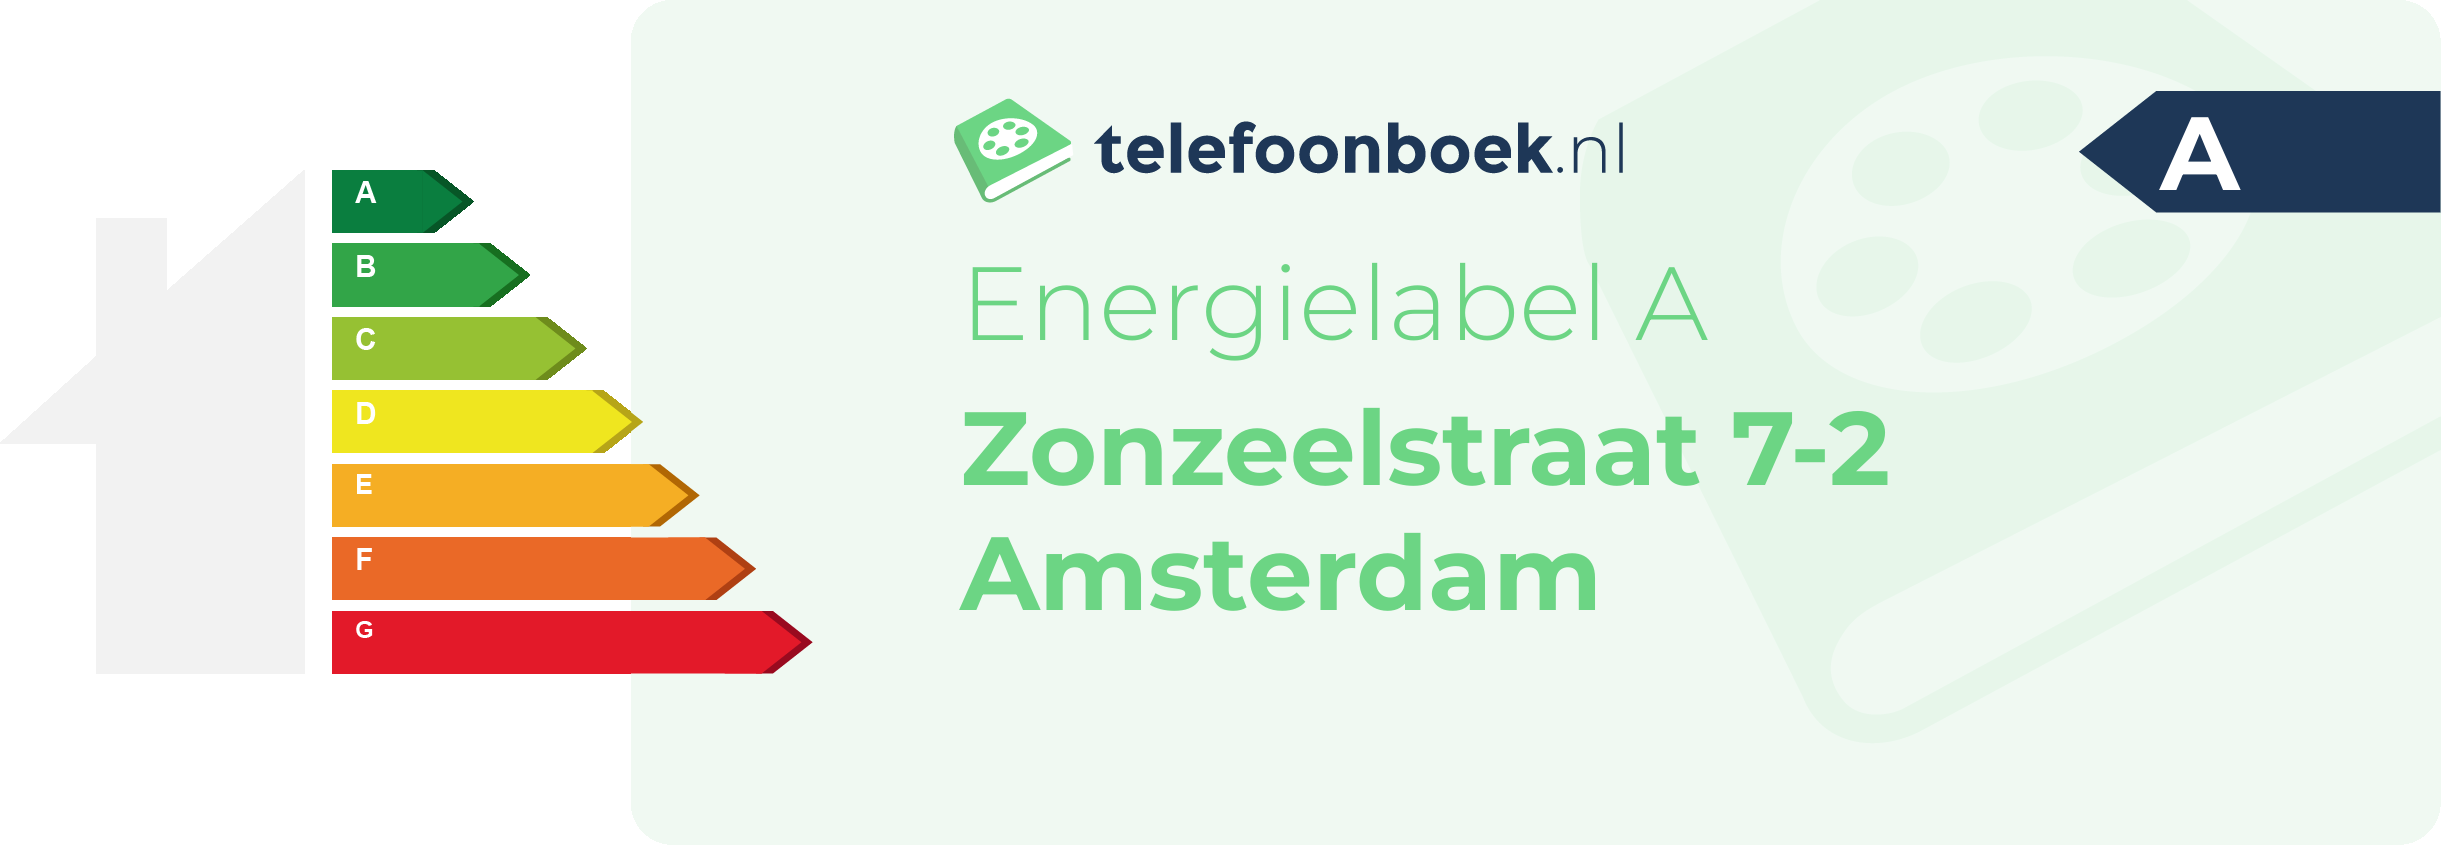 Energielabel Zonzeelstraat 7-2 Amsterdam